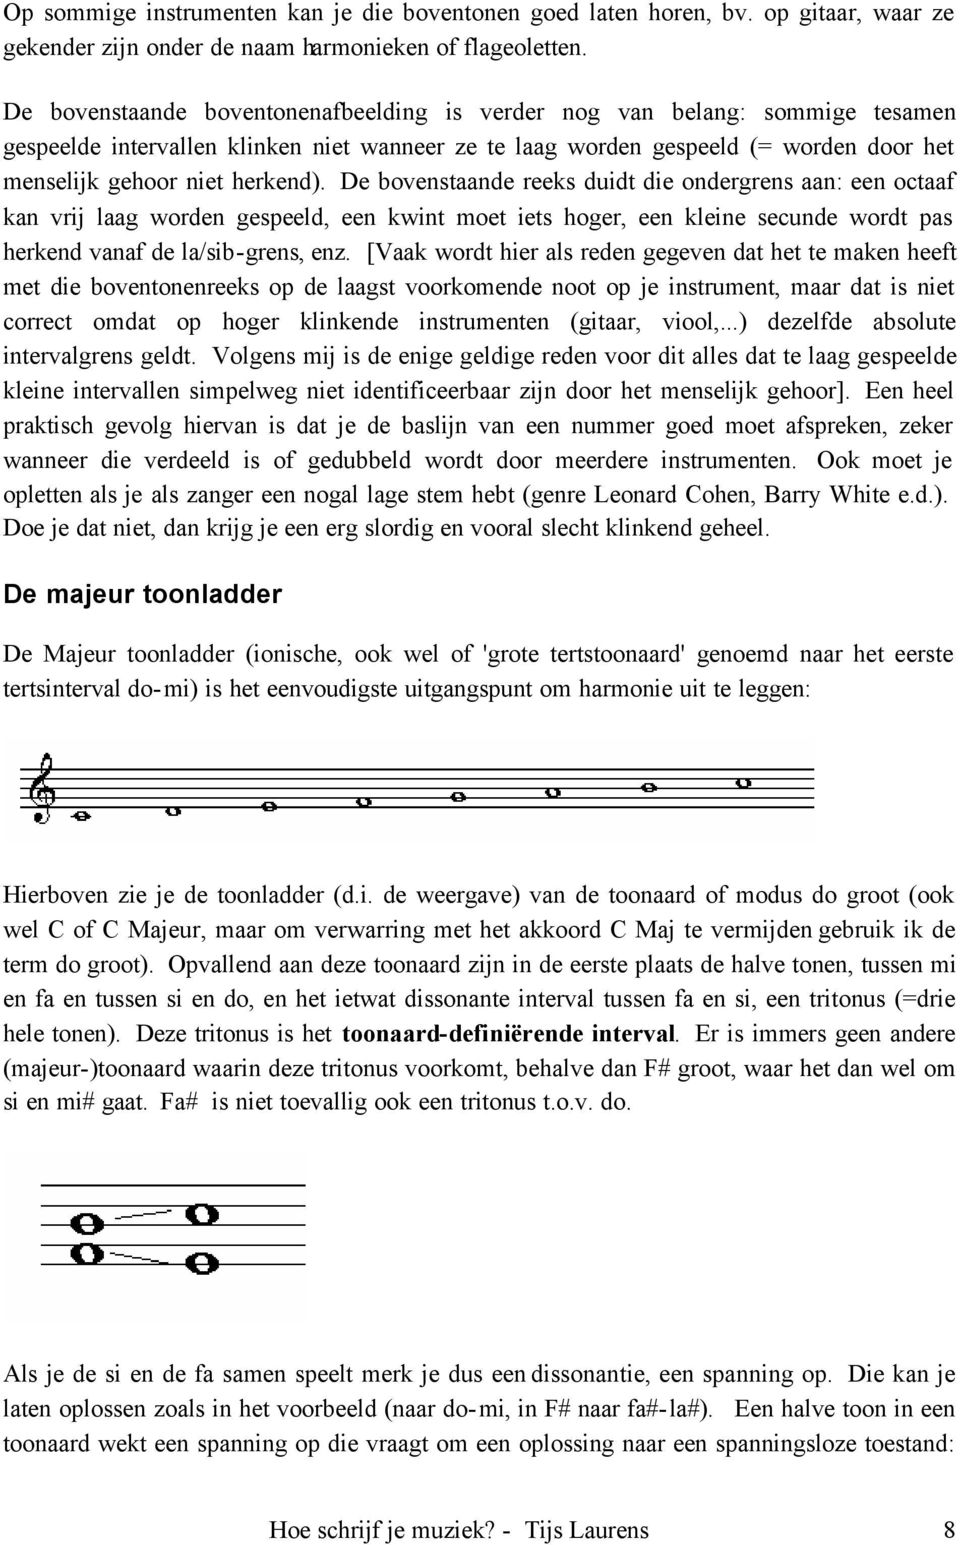 De bovenstaande reeks duidt die ondergrens aan: een octaaf kan vrij laag worden gespeeld, een kwint moet iets hoger, een kleine secunde wordt pas herkend vanaf de la/sib-grens, enz.